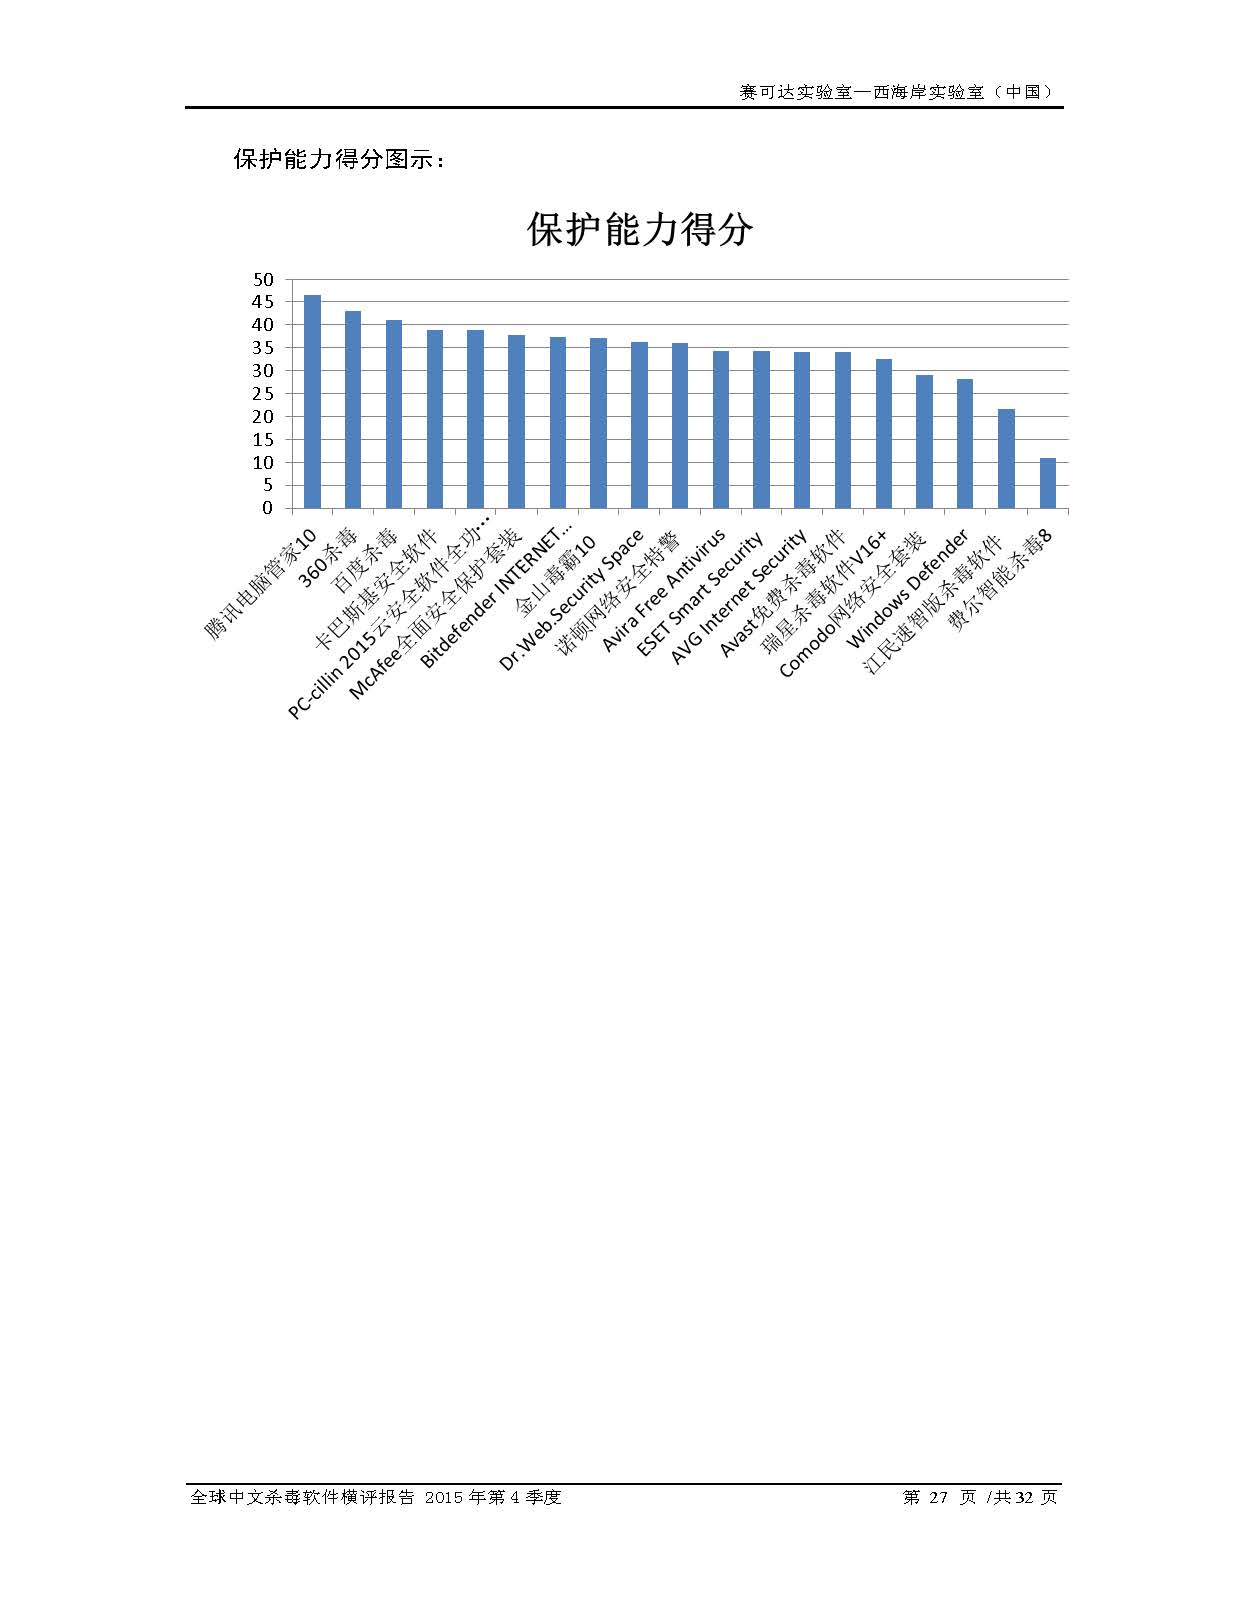 中文PC杀毒软件横评测试报告- Windows 8.1【中文版】.pdf (_Page_29.jpg